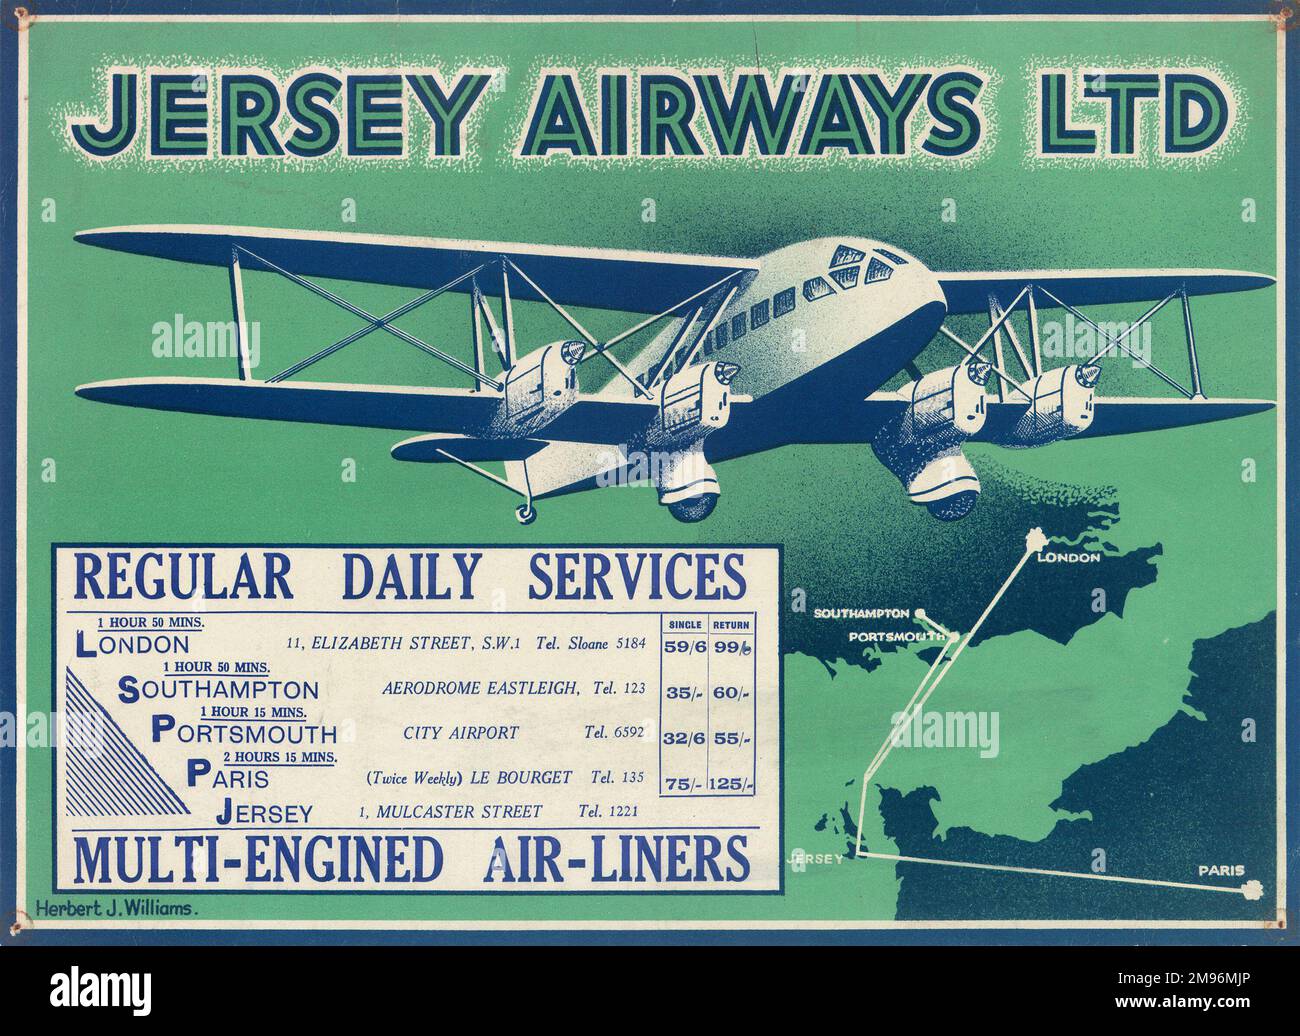 Poster, Jersey Airways Ltd, Regular Daily Services, Mehrmotorige Air-Liners. Zeigt ein De Havilland Doppeldecker mit einer Karte unten. Stockfoto